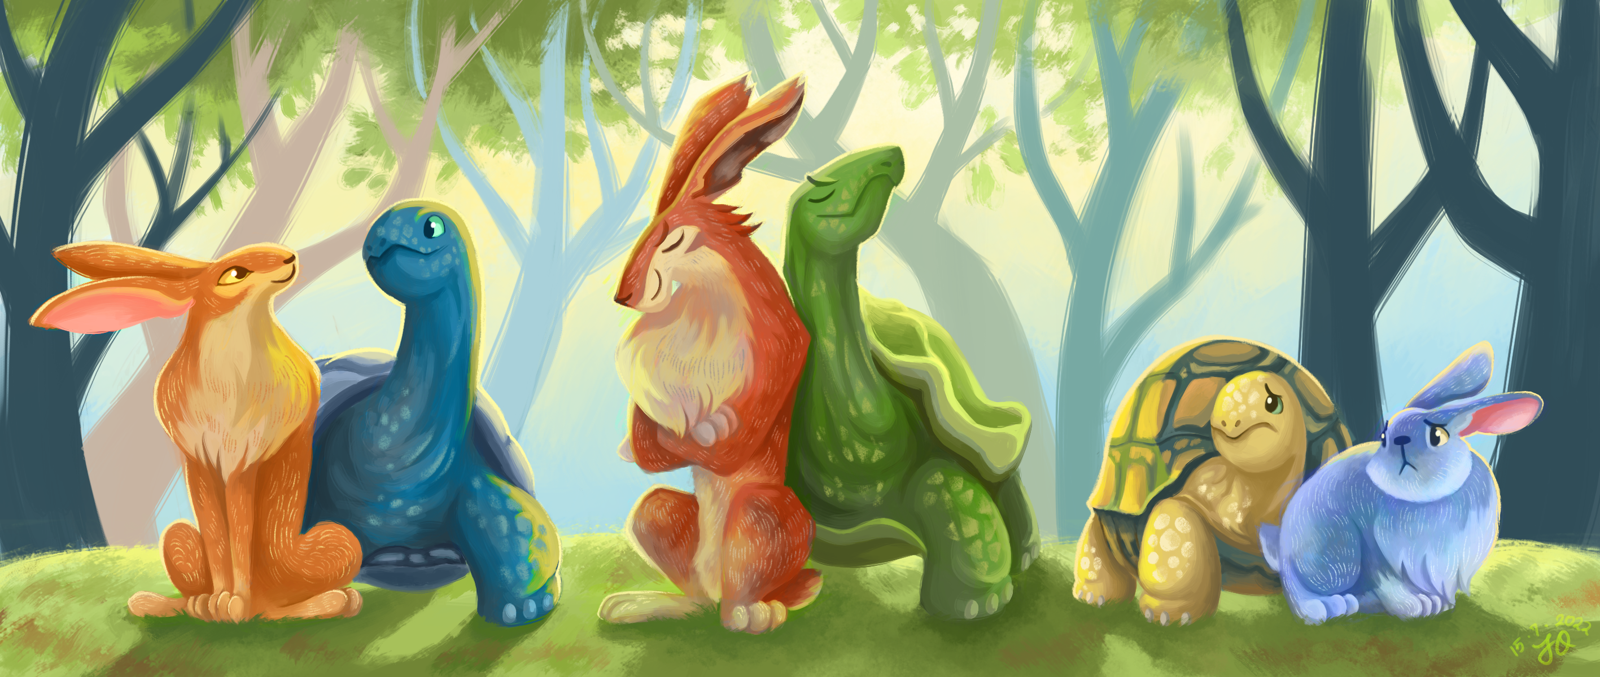 龟兔赛跑角色的角色设计概括图，包括三对乌龟和它们的兔子骑手。